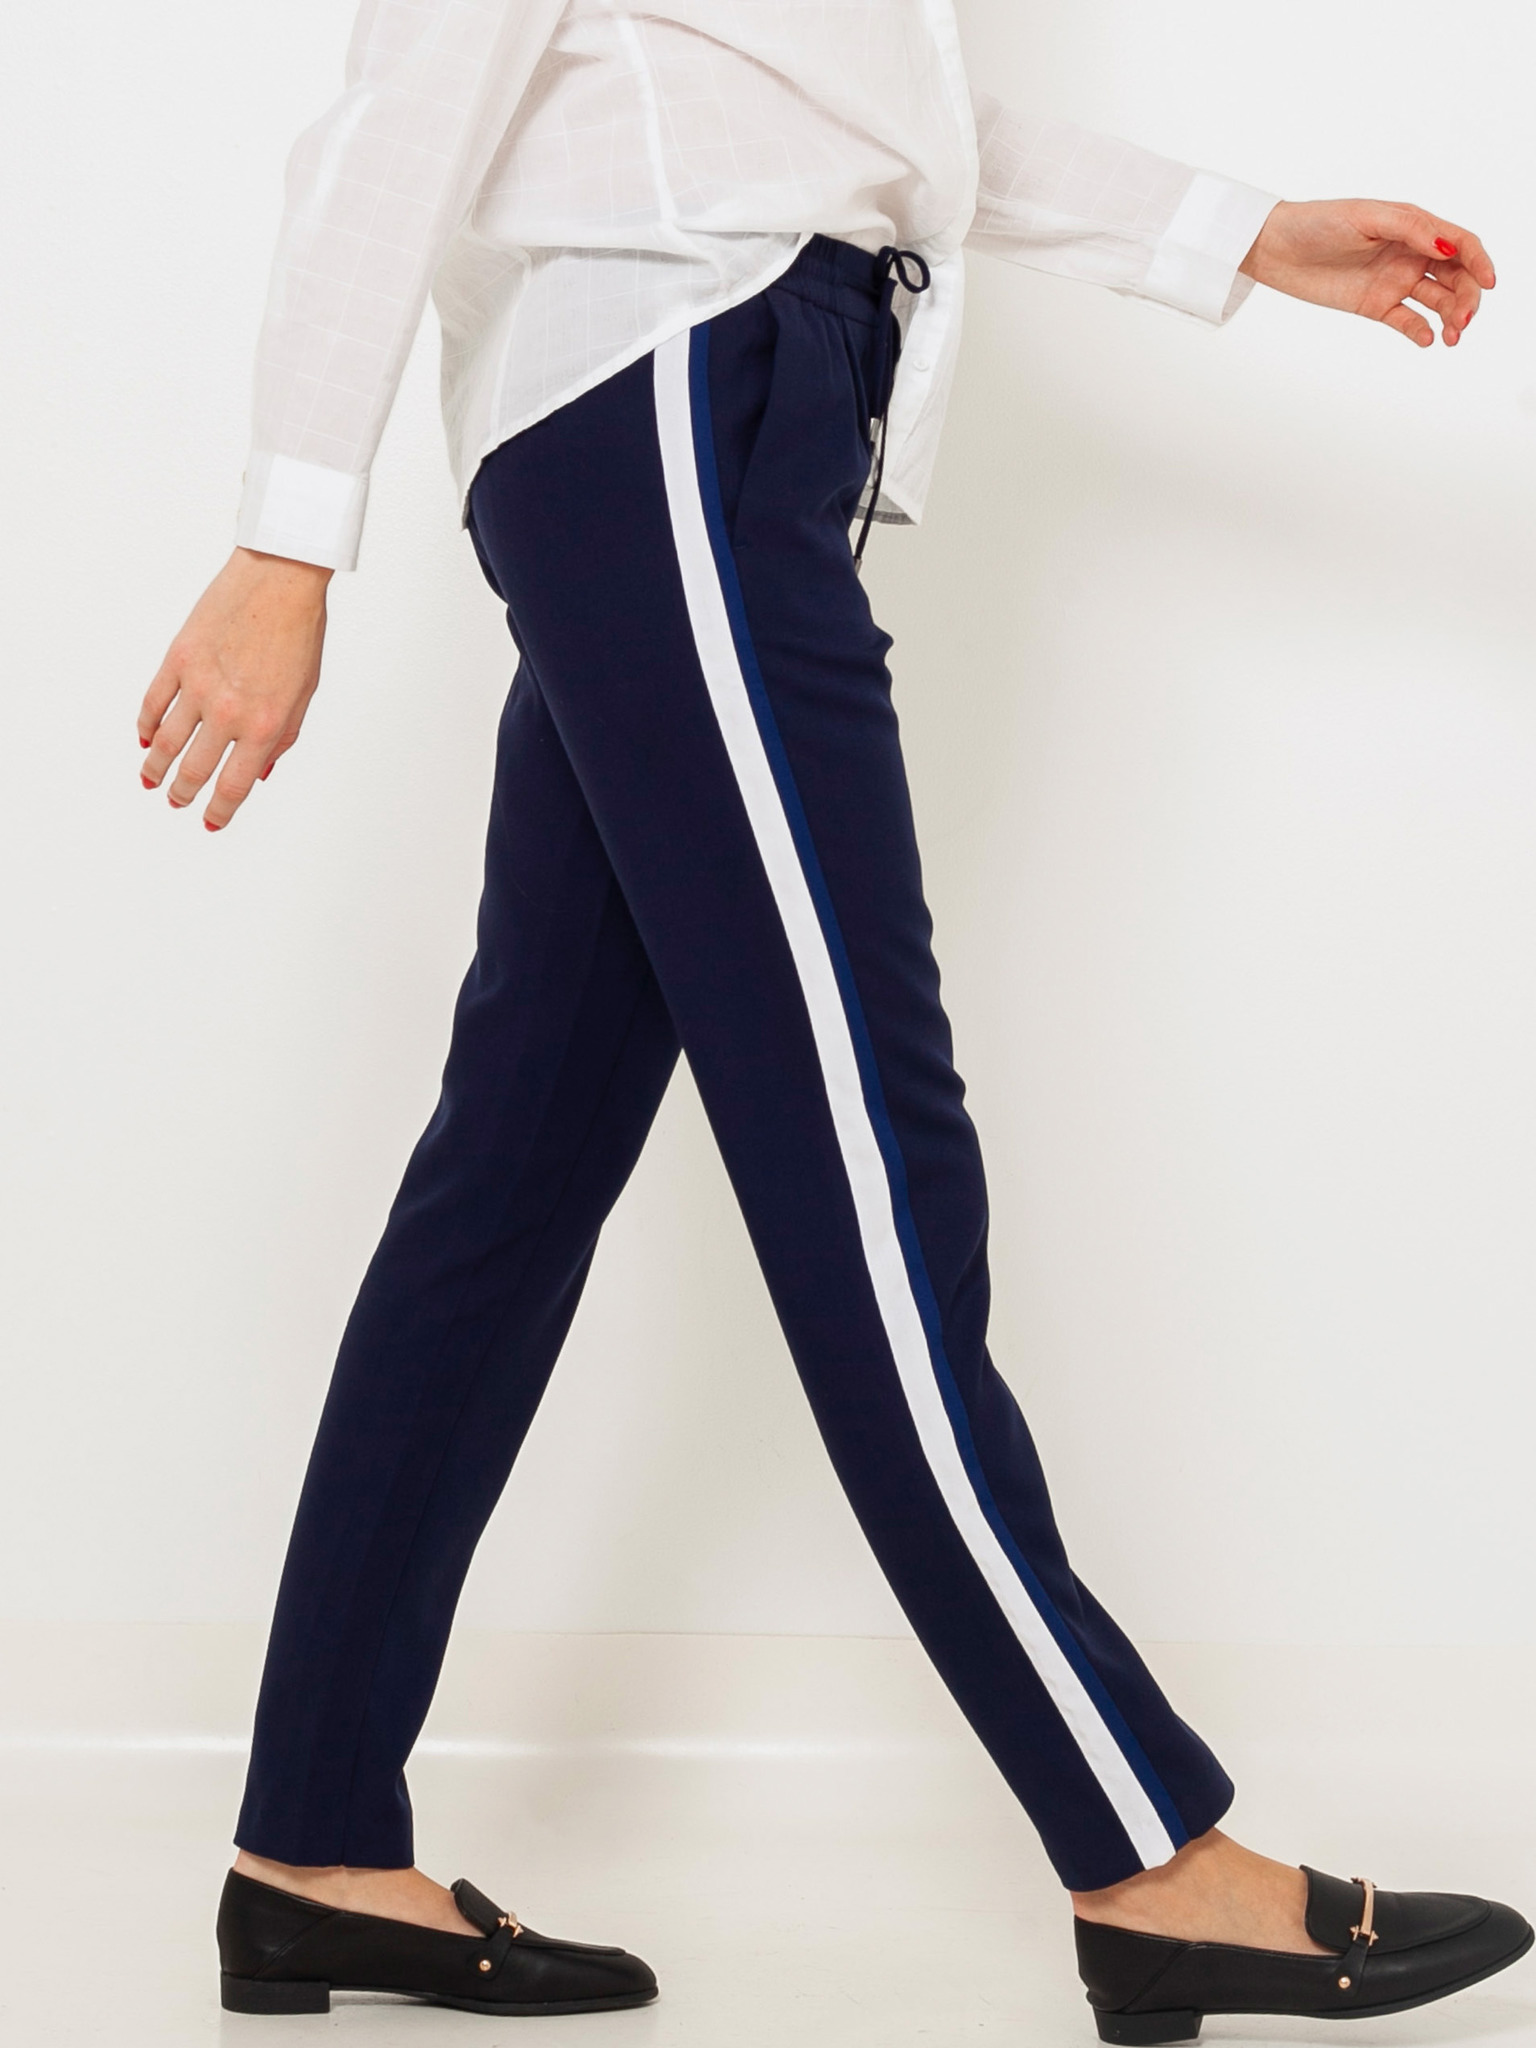 Pants with Side Stripes - Dark blue/red - Ladies | H&M US